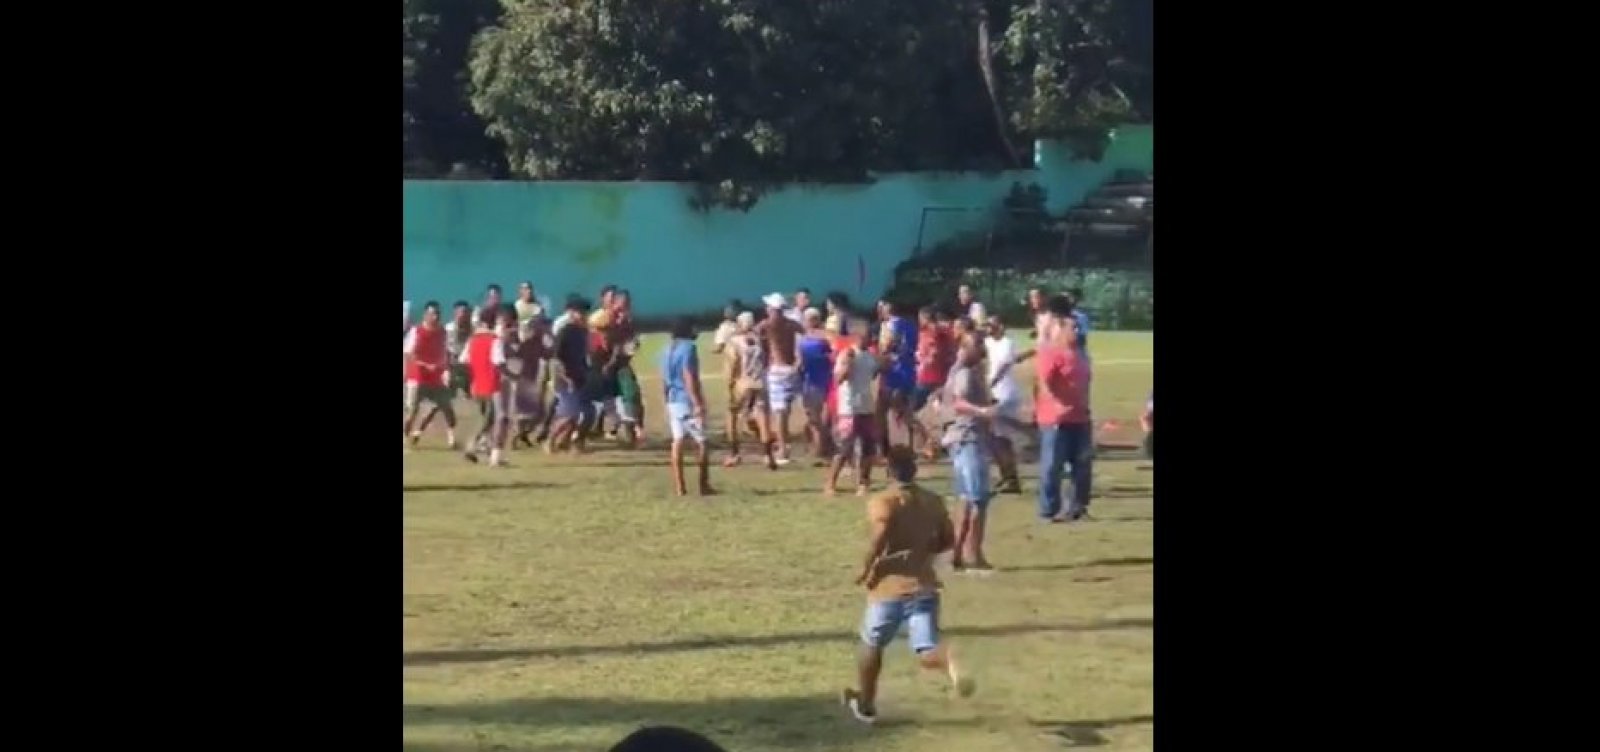 Campeonato amador de futebol em Vera Cruz termina com briga generalizada entre torcedores